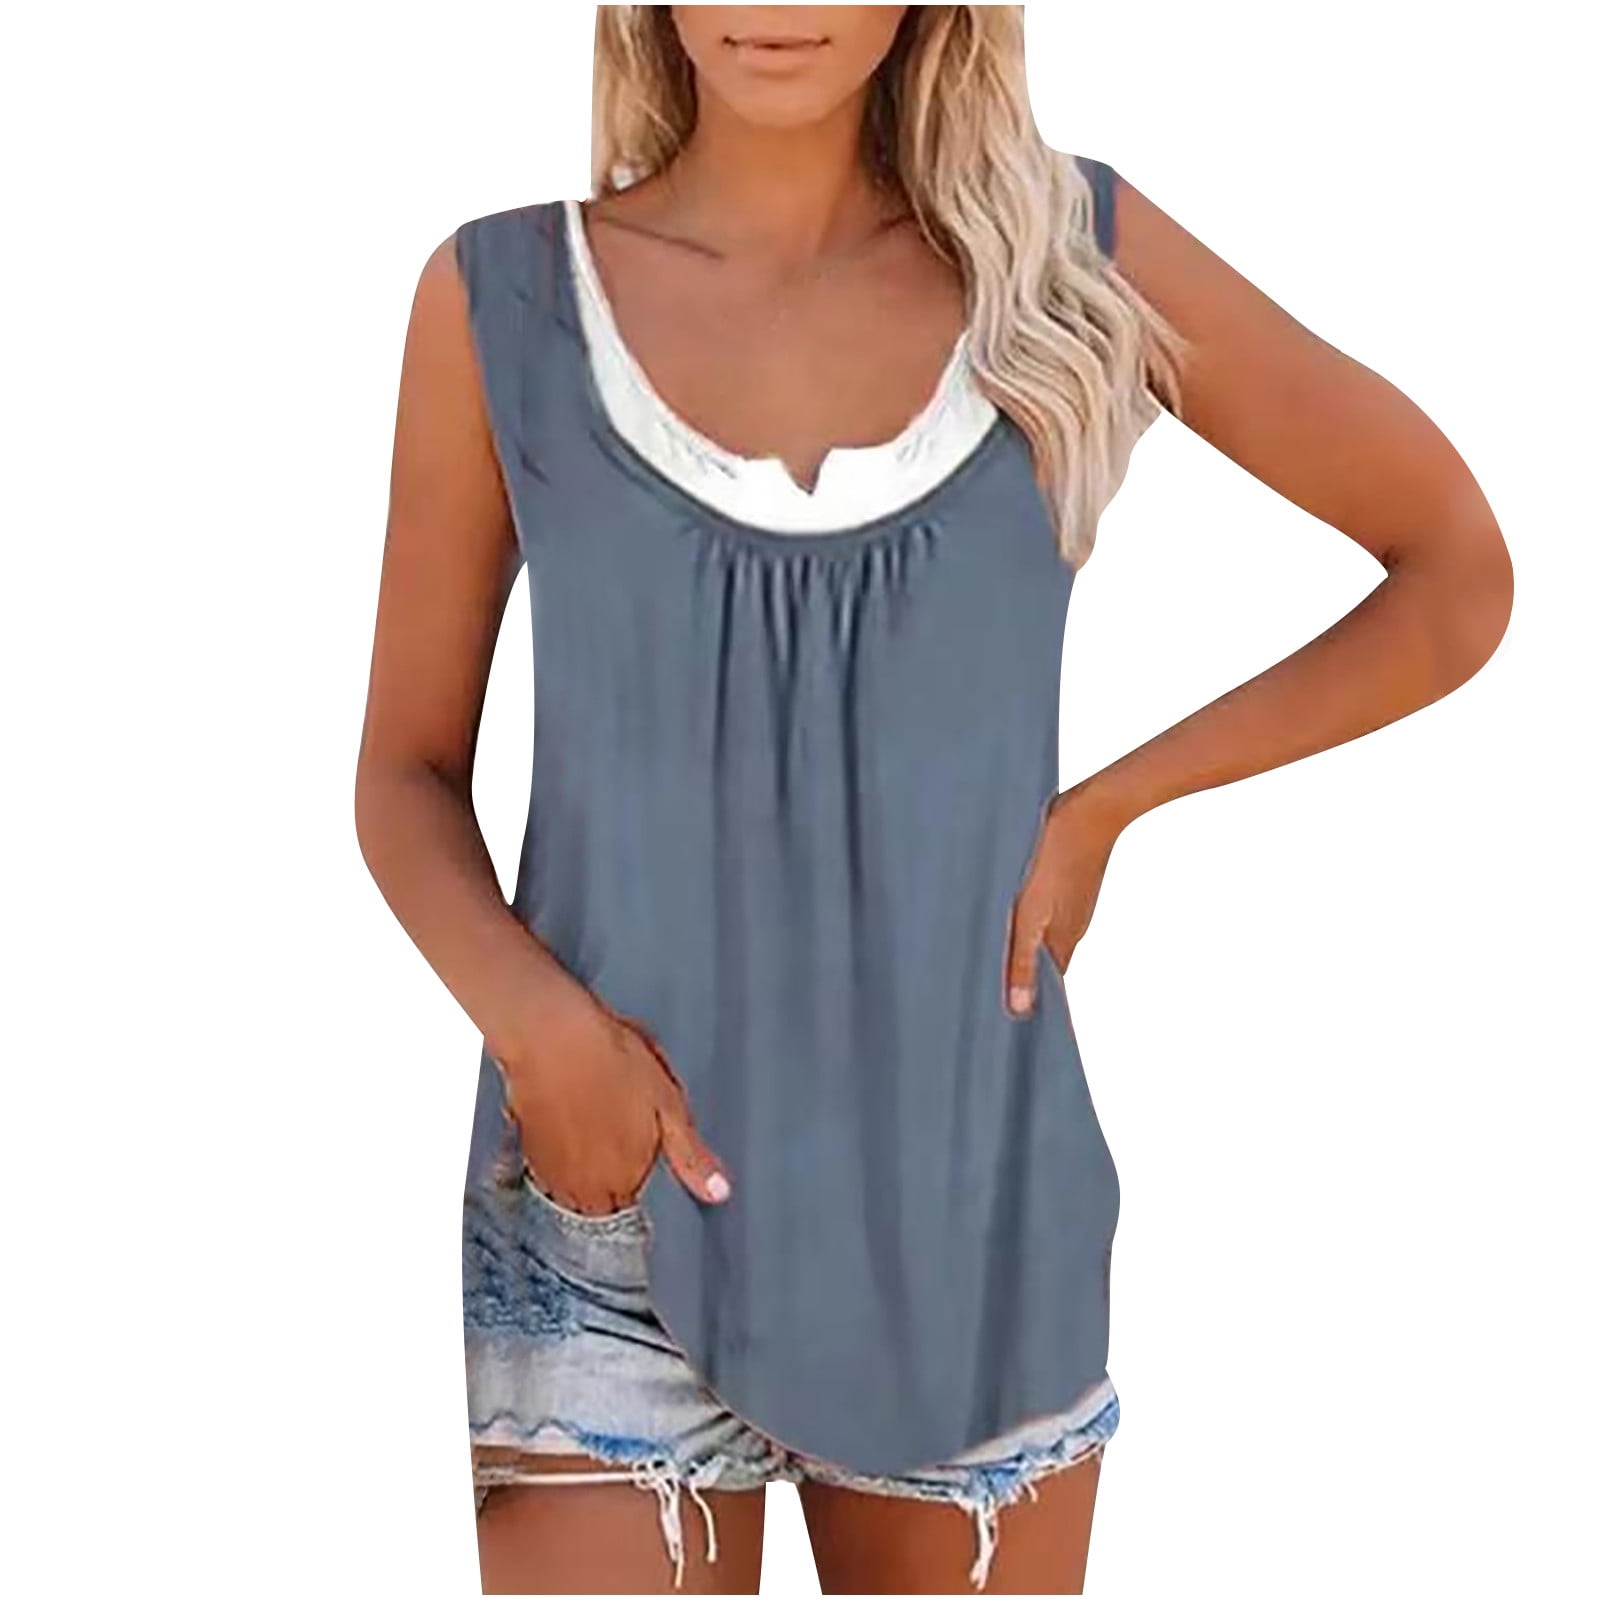 Women Summer Loose Vest Sleeveless Shirt Blouse Casual Cotton Tank Top T-Shirt